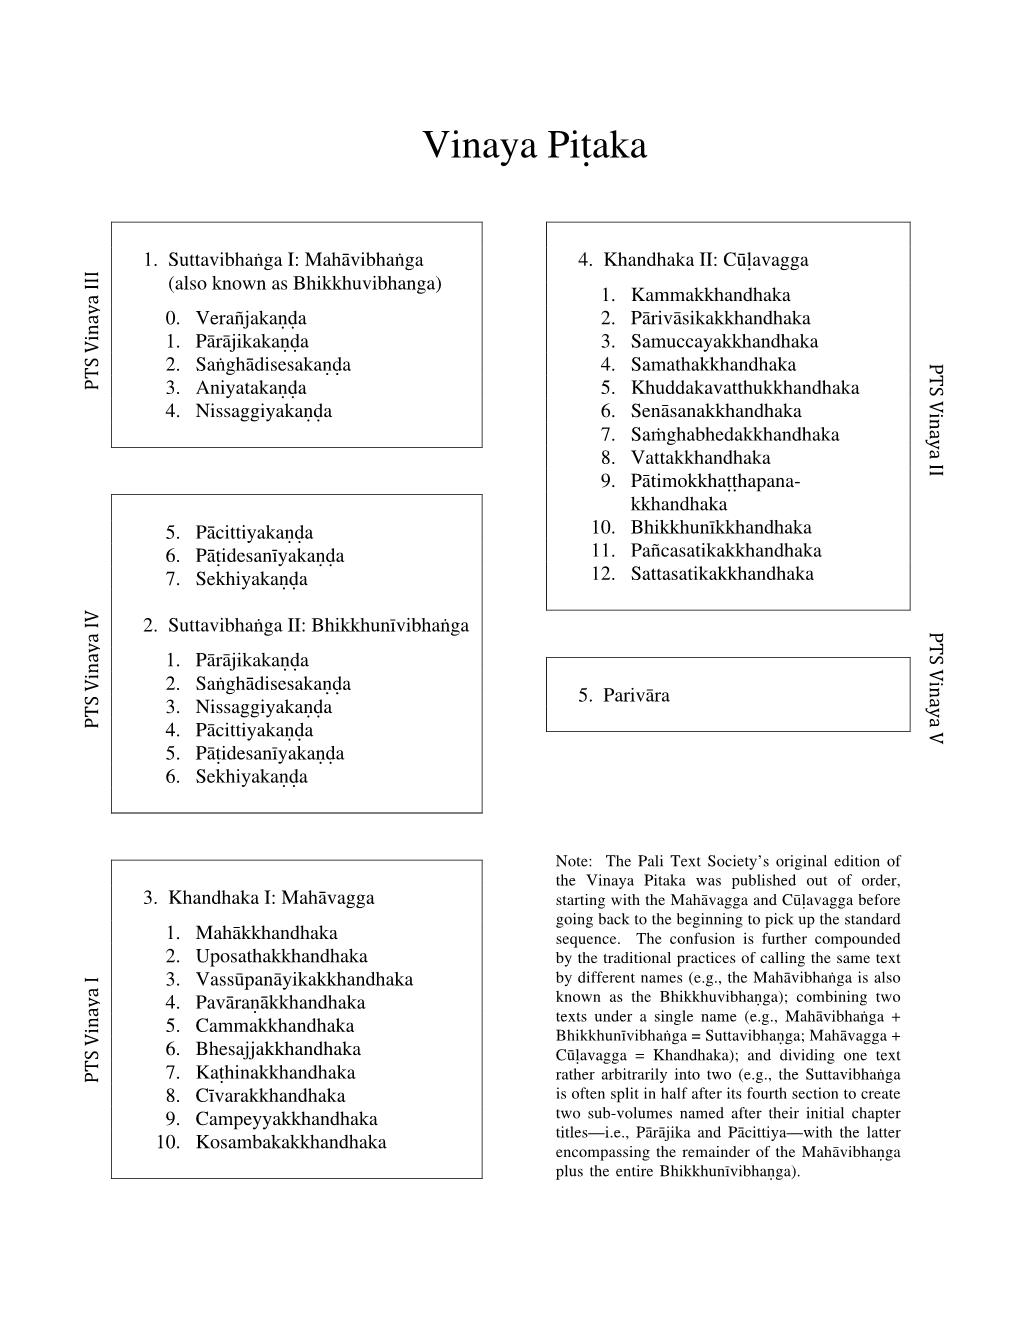 Vinaya Pitaka Table of Contents